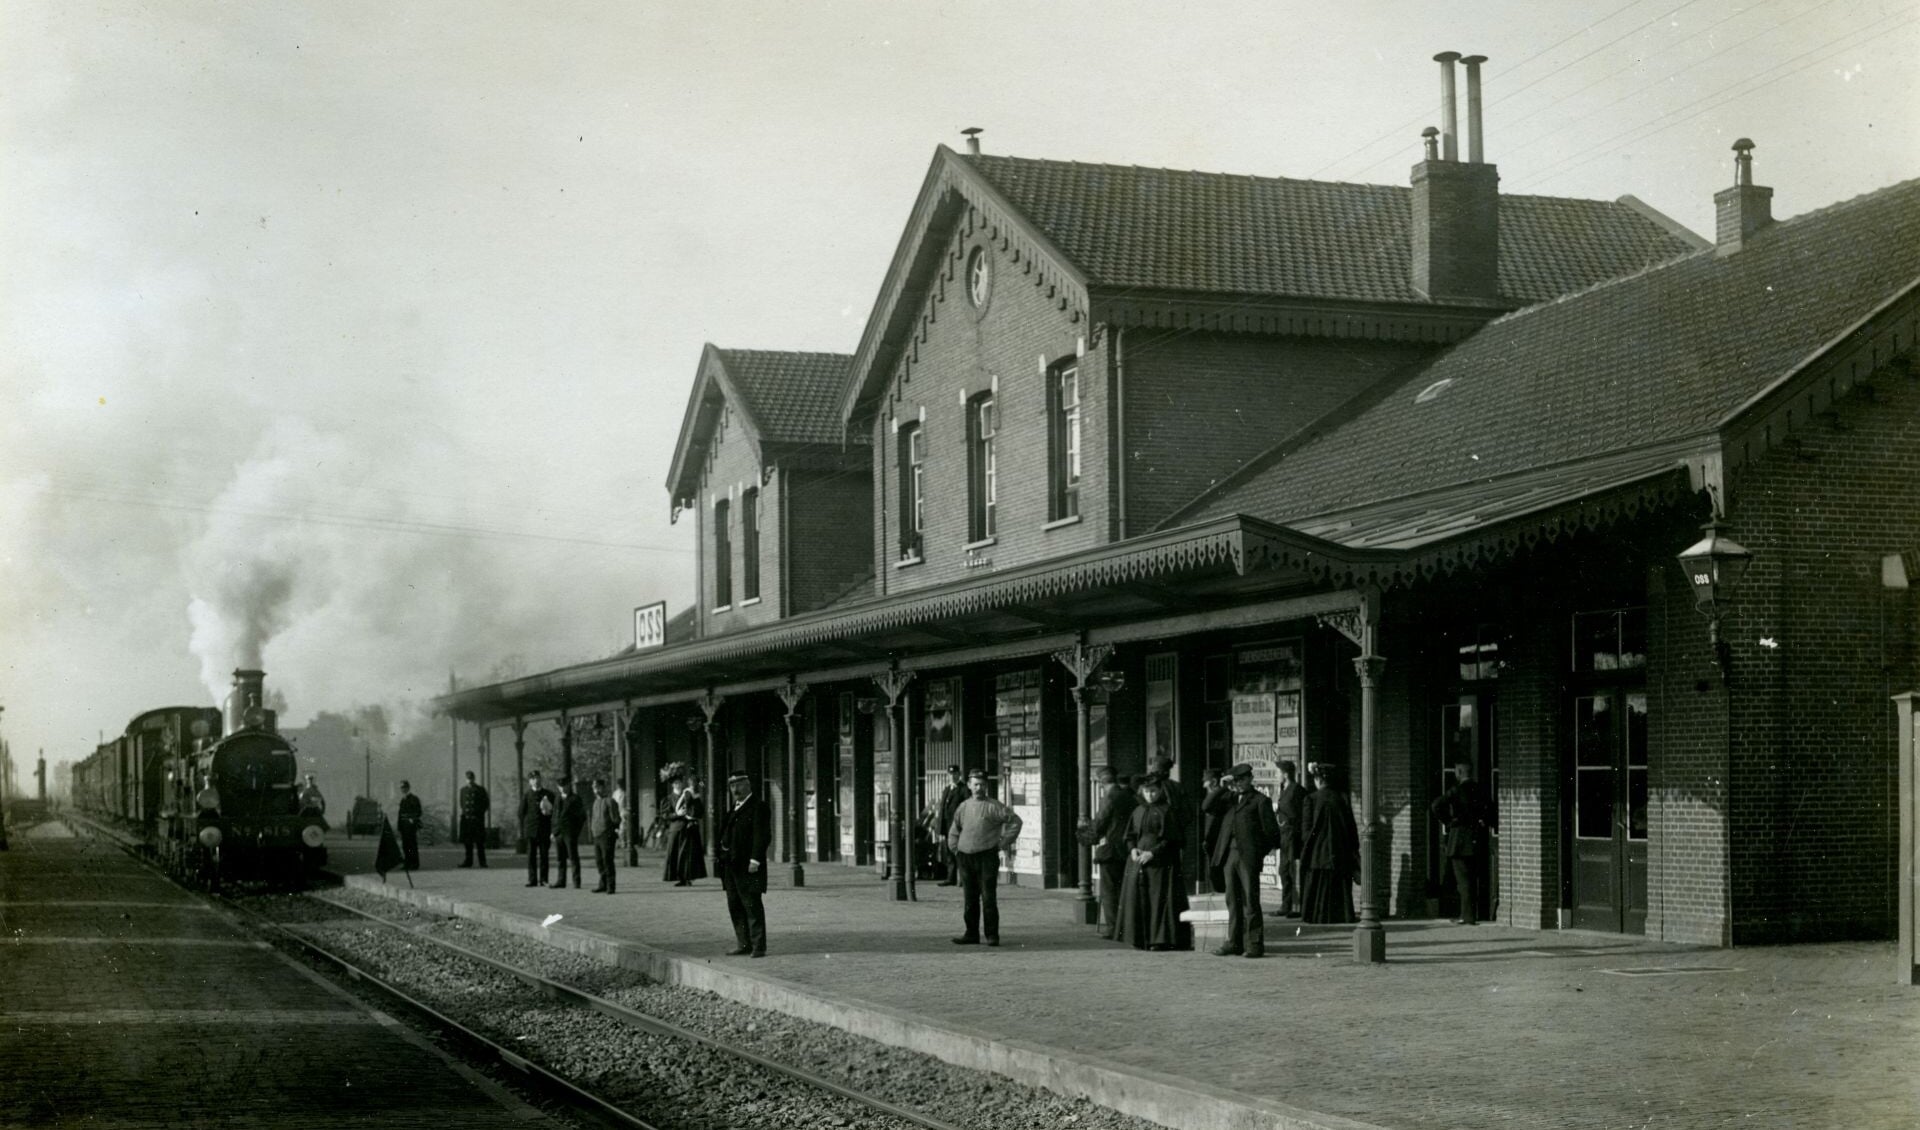 Het eerste Osse station werd geopend in 1881 en in 1904 uitgebreid. Rond 1910 stelde Adrianus van de Rakt zijn camera zo op dat hij niet alleen het station, maar ook een aankomende stoomtrein vastlegde. 